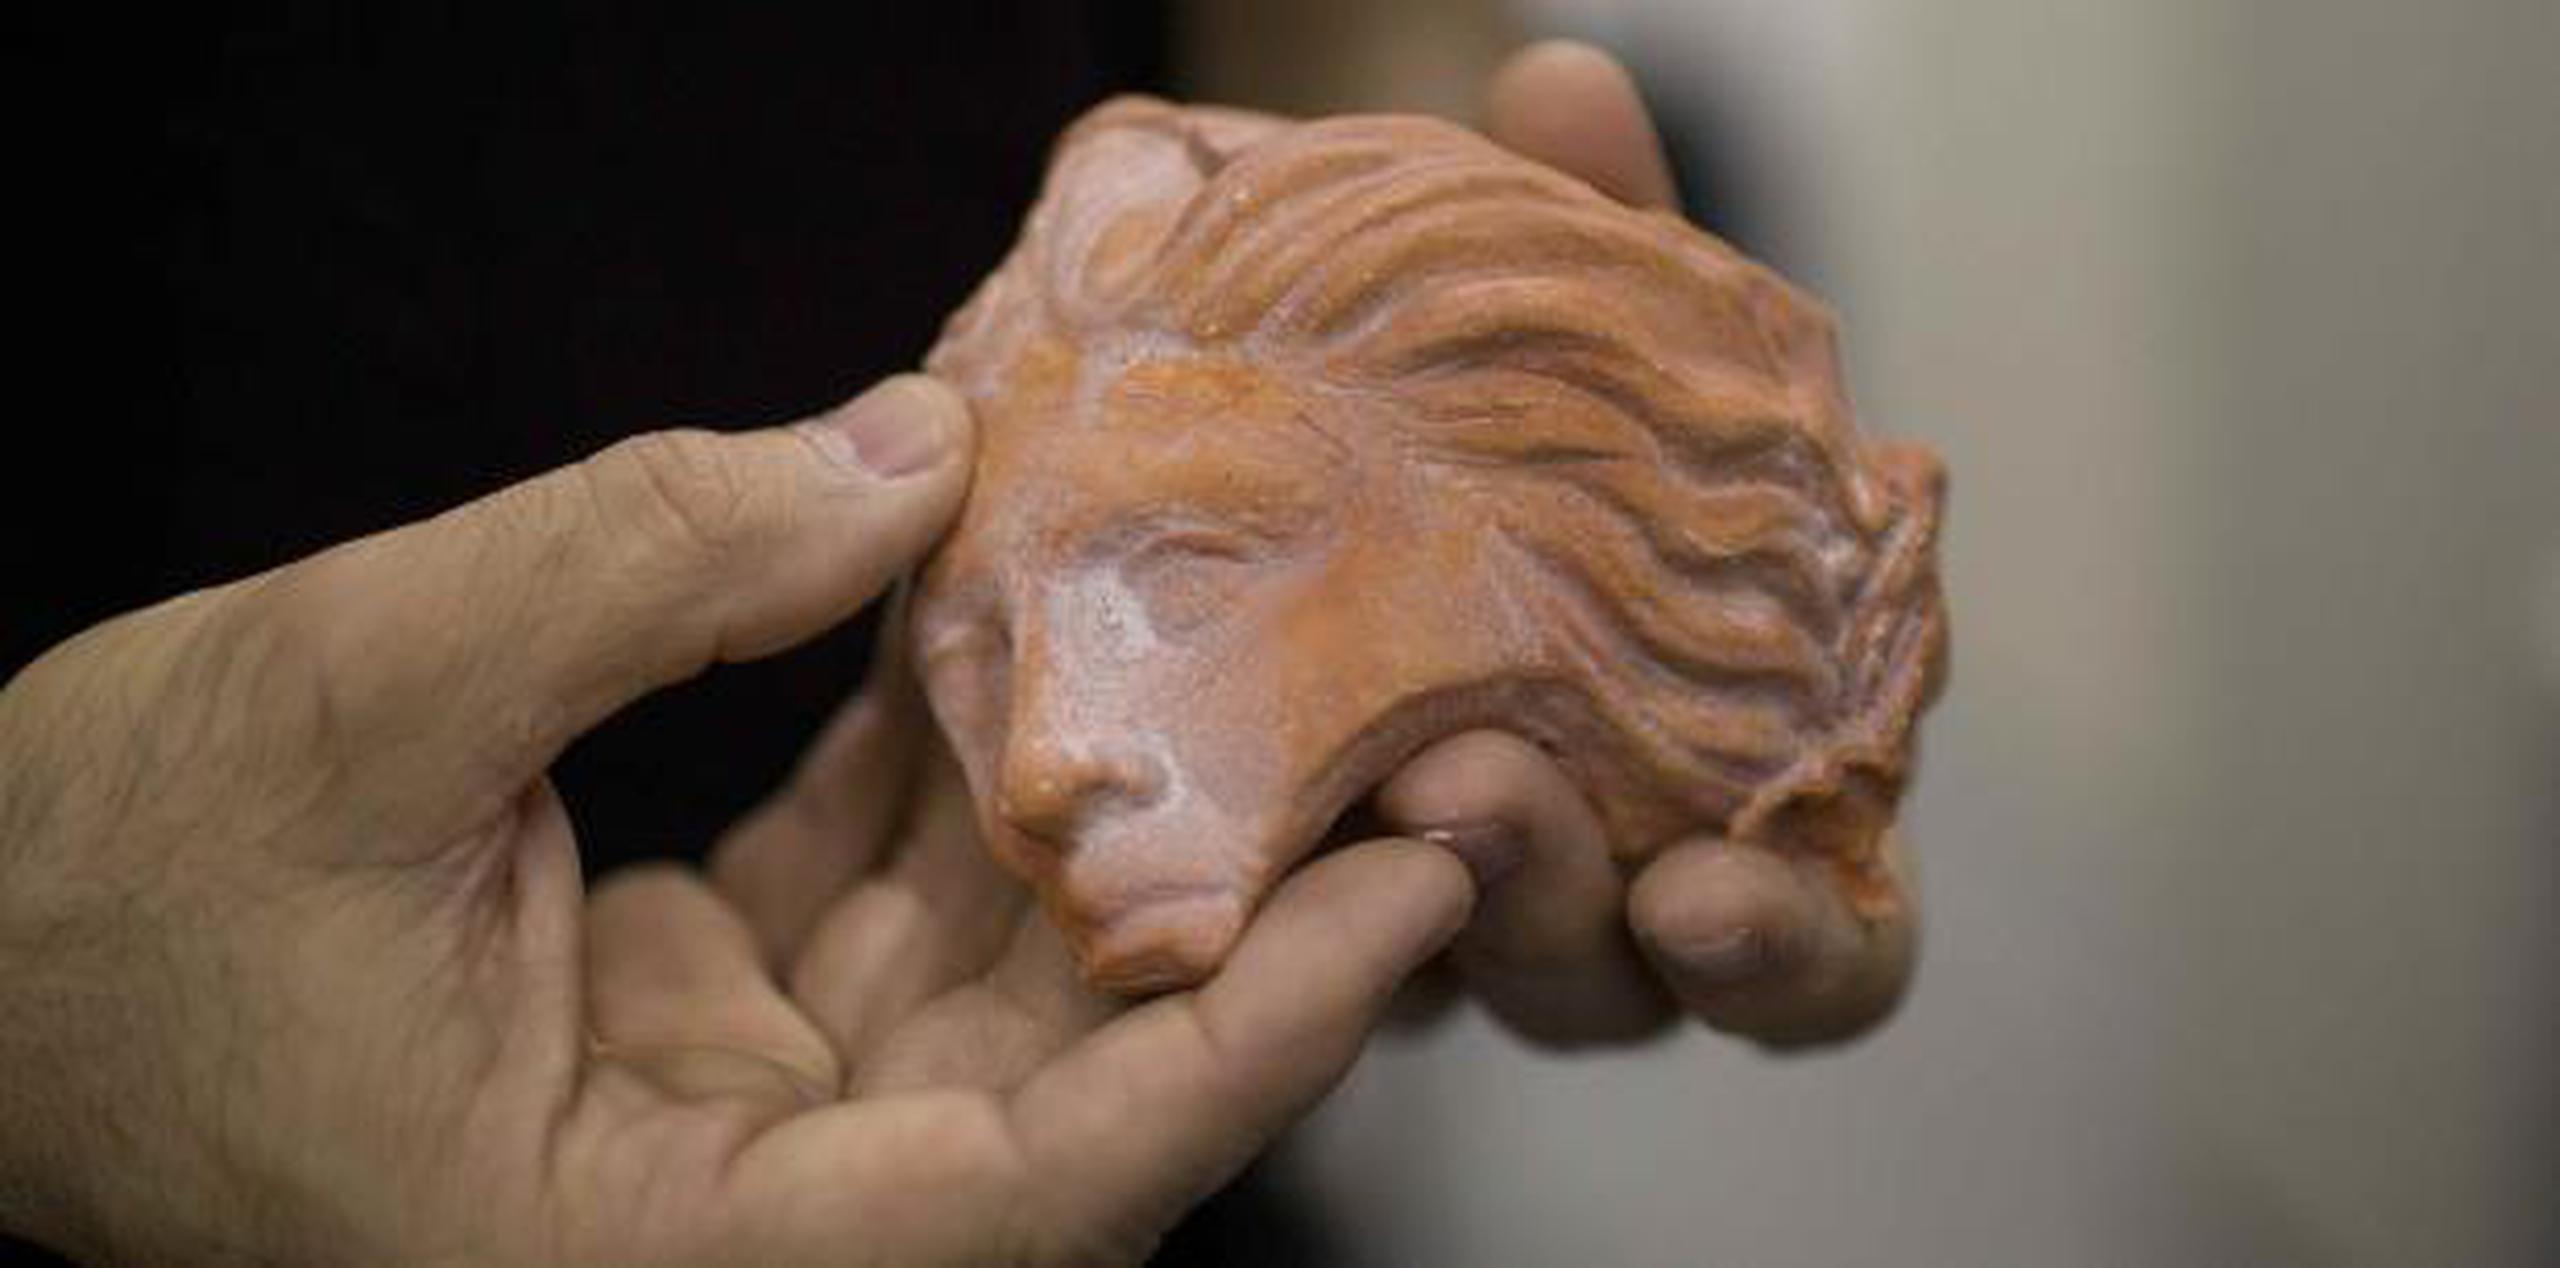 Jorge Lopes, investigador de la Pontificia Universidad Católica, muestra una impresión 3D de una pieza griega que perteneció al museo. (AP / Silvia Izquierdo)